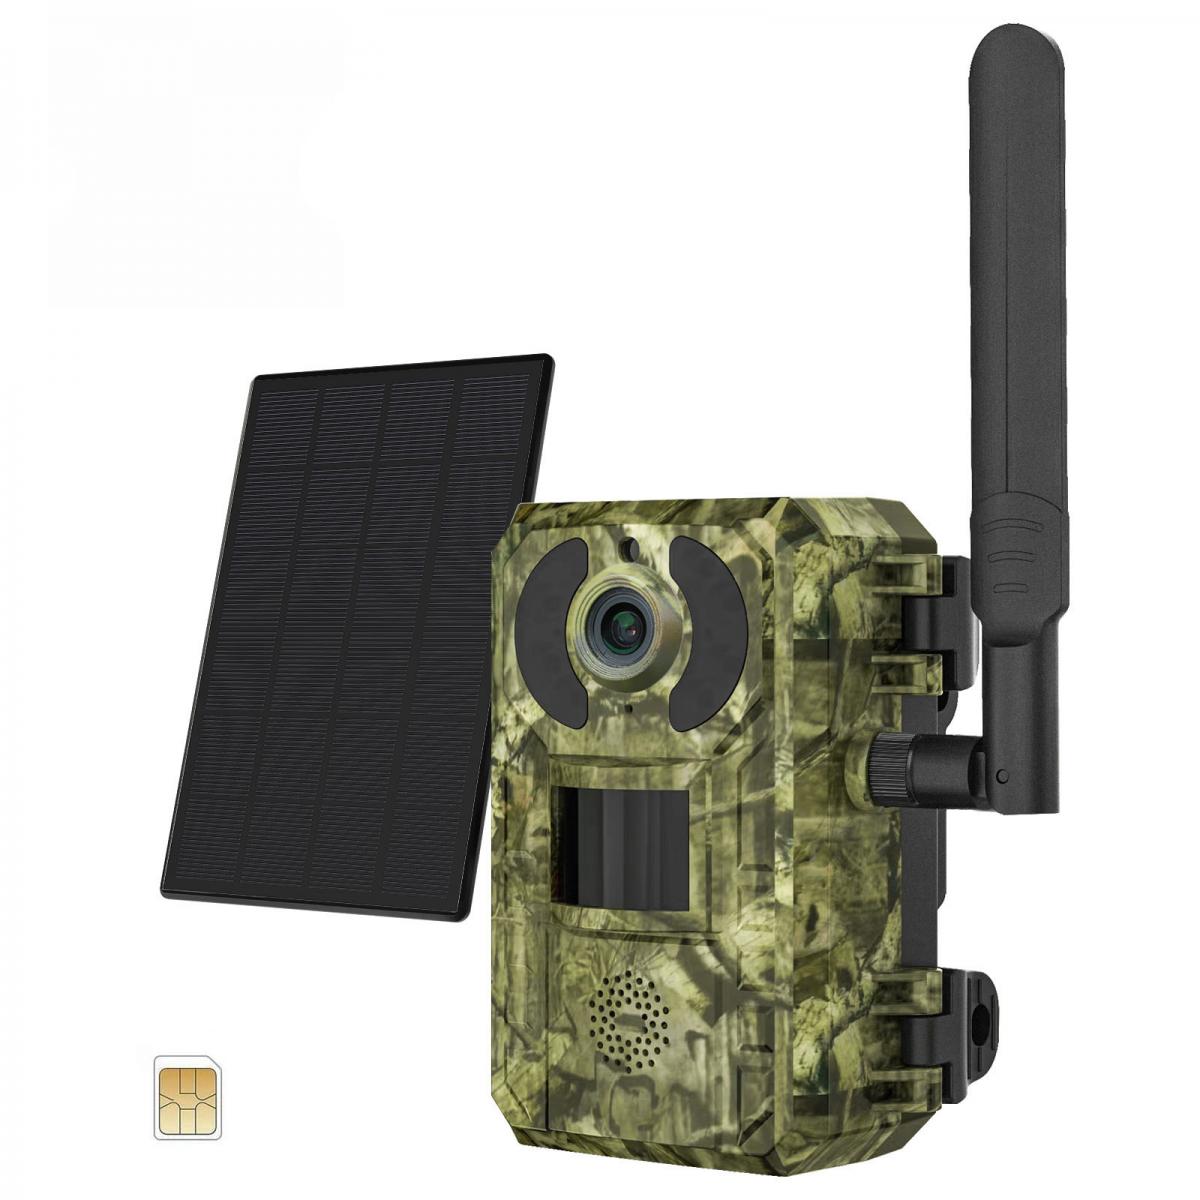 Caméra Nichoir HD Paquet avec Transmission Sans fil - Green Backyard